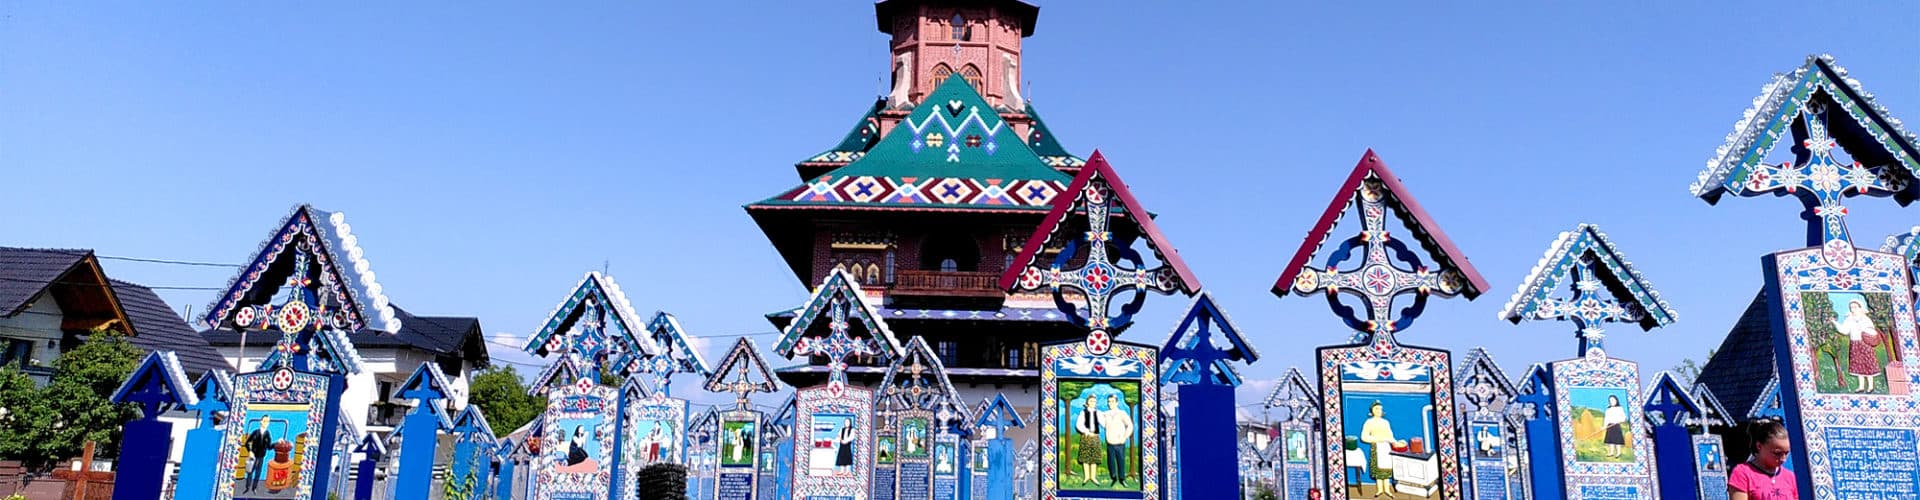 Cimetière joyeux de Sapanta, Roumanie